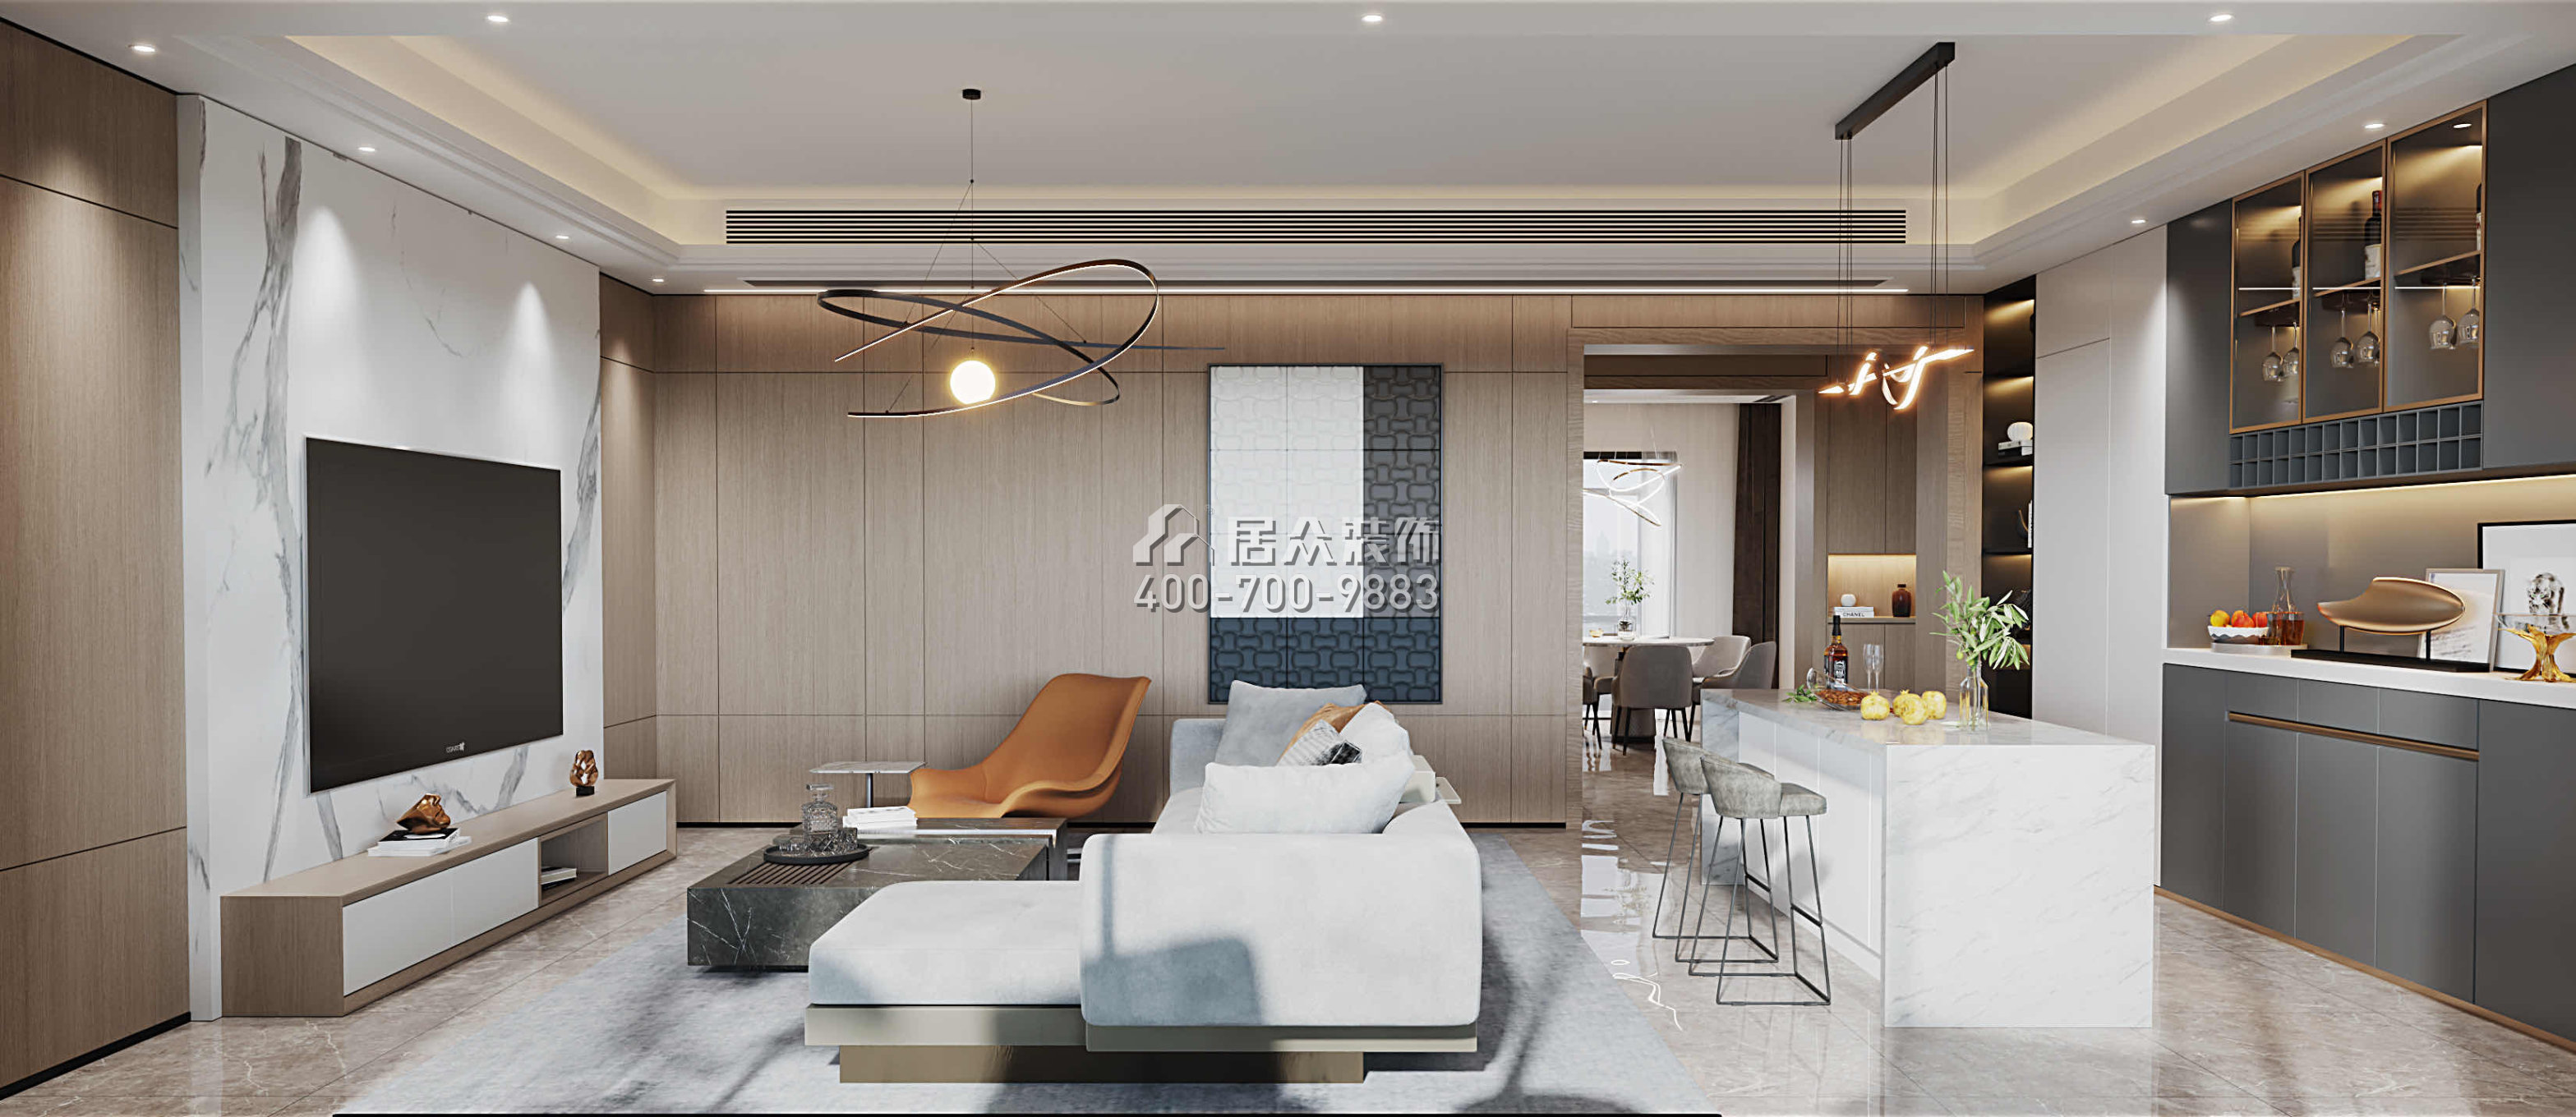 華發綠洋灣191平方米現代簡約風格平層戶型客廳裝修效果圖